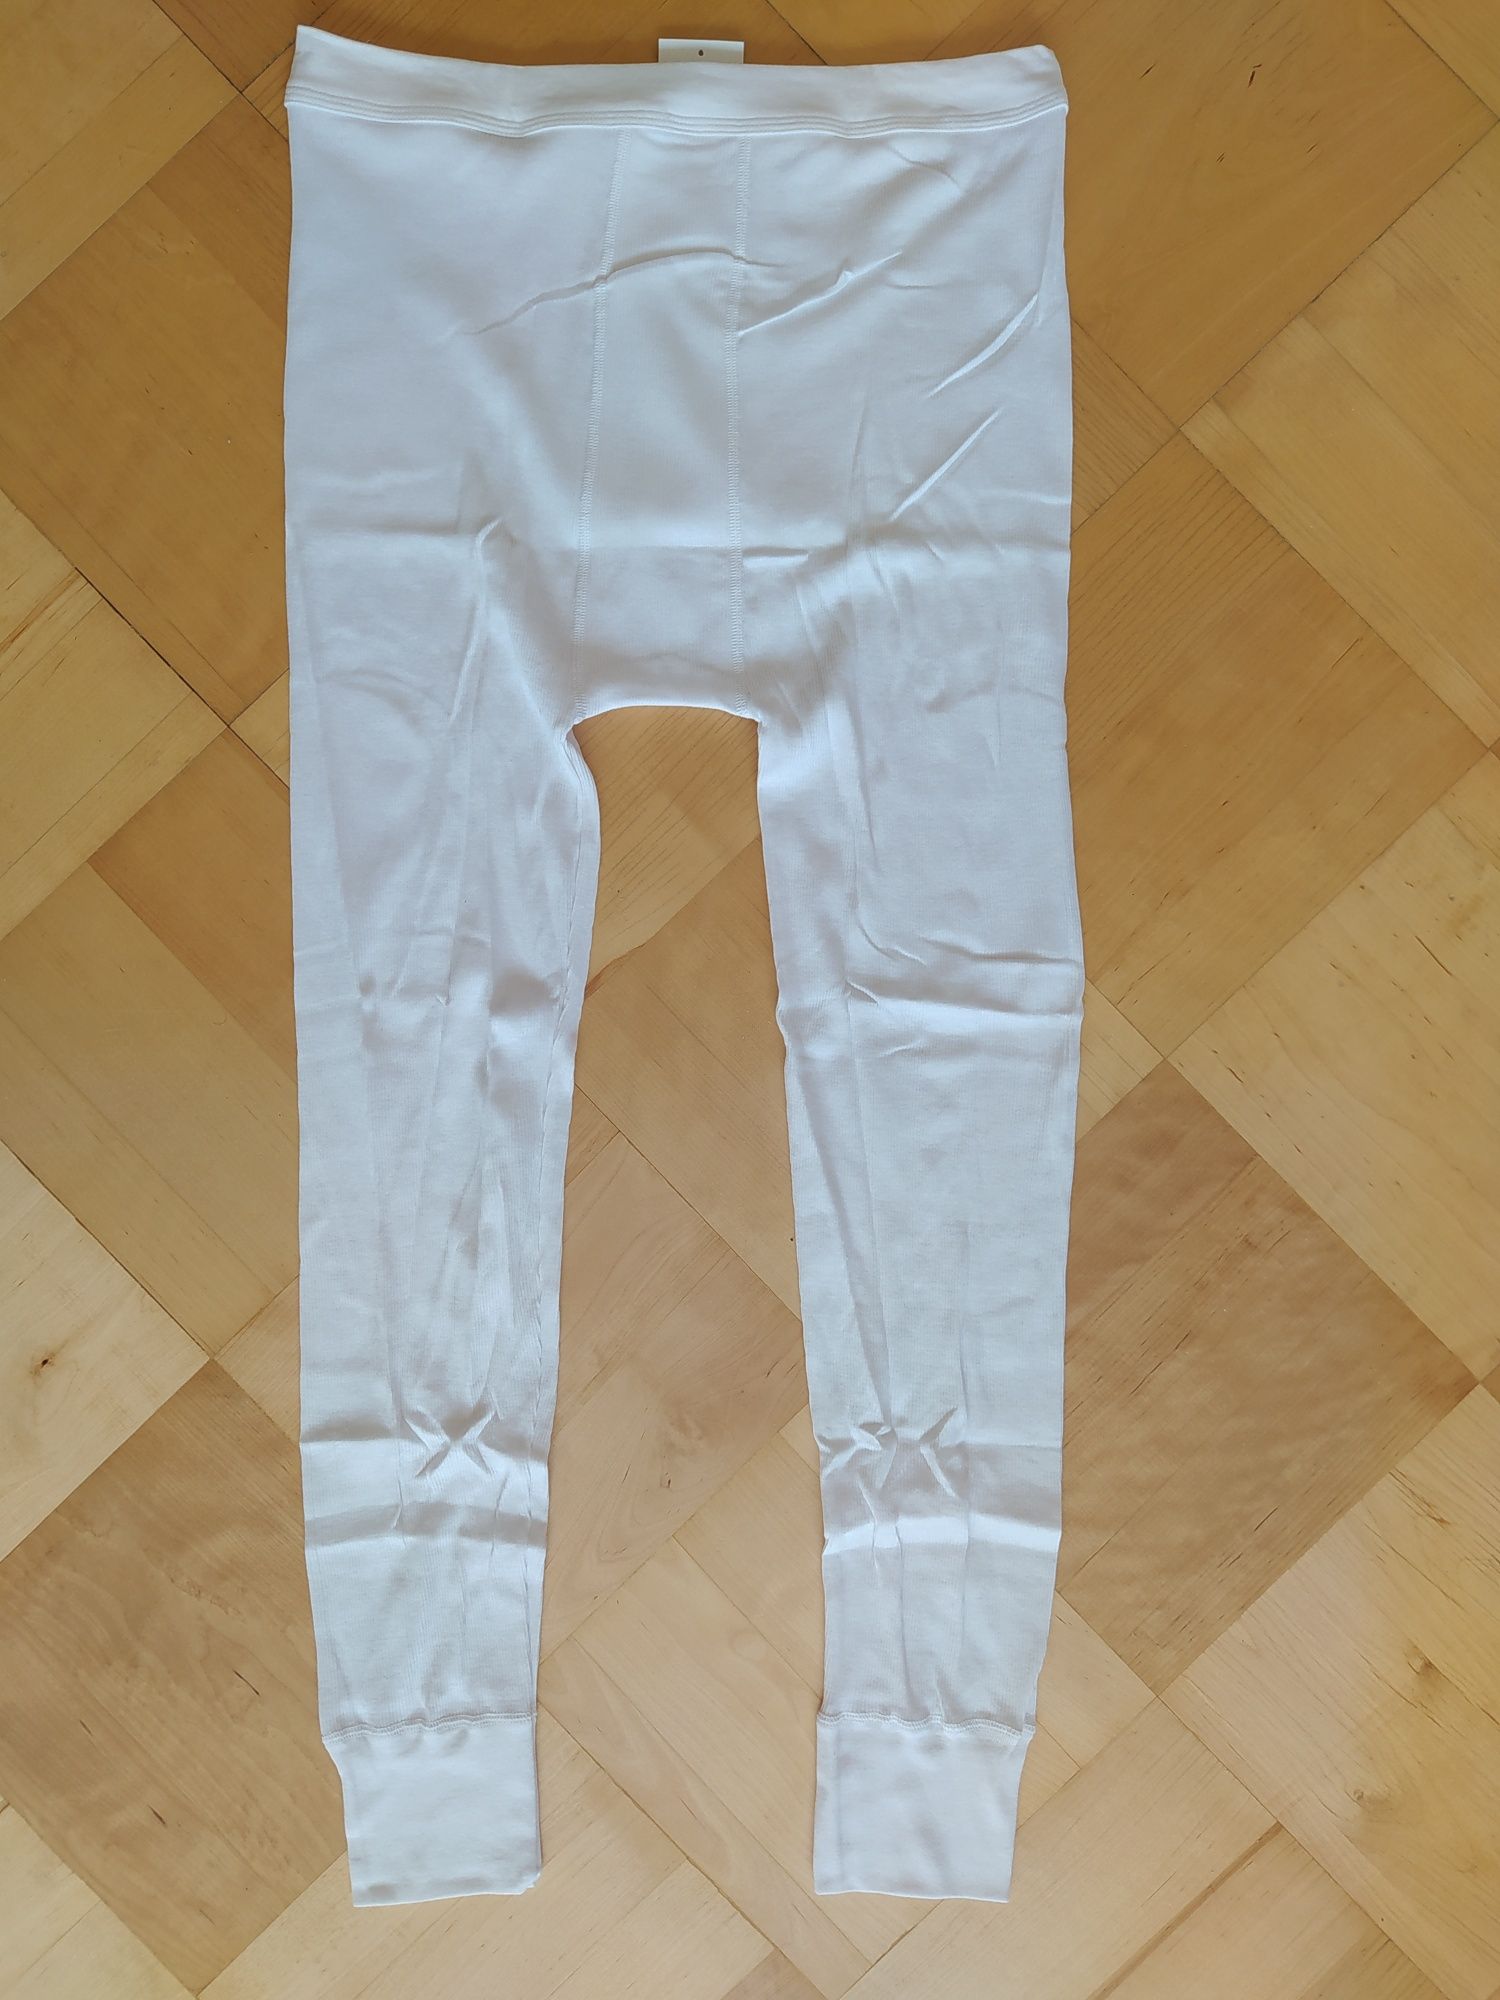 Nowe kalesony XL długie prążkowane białe męskie 100% bawełna